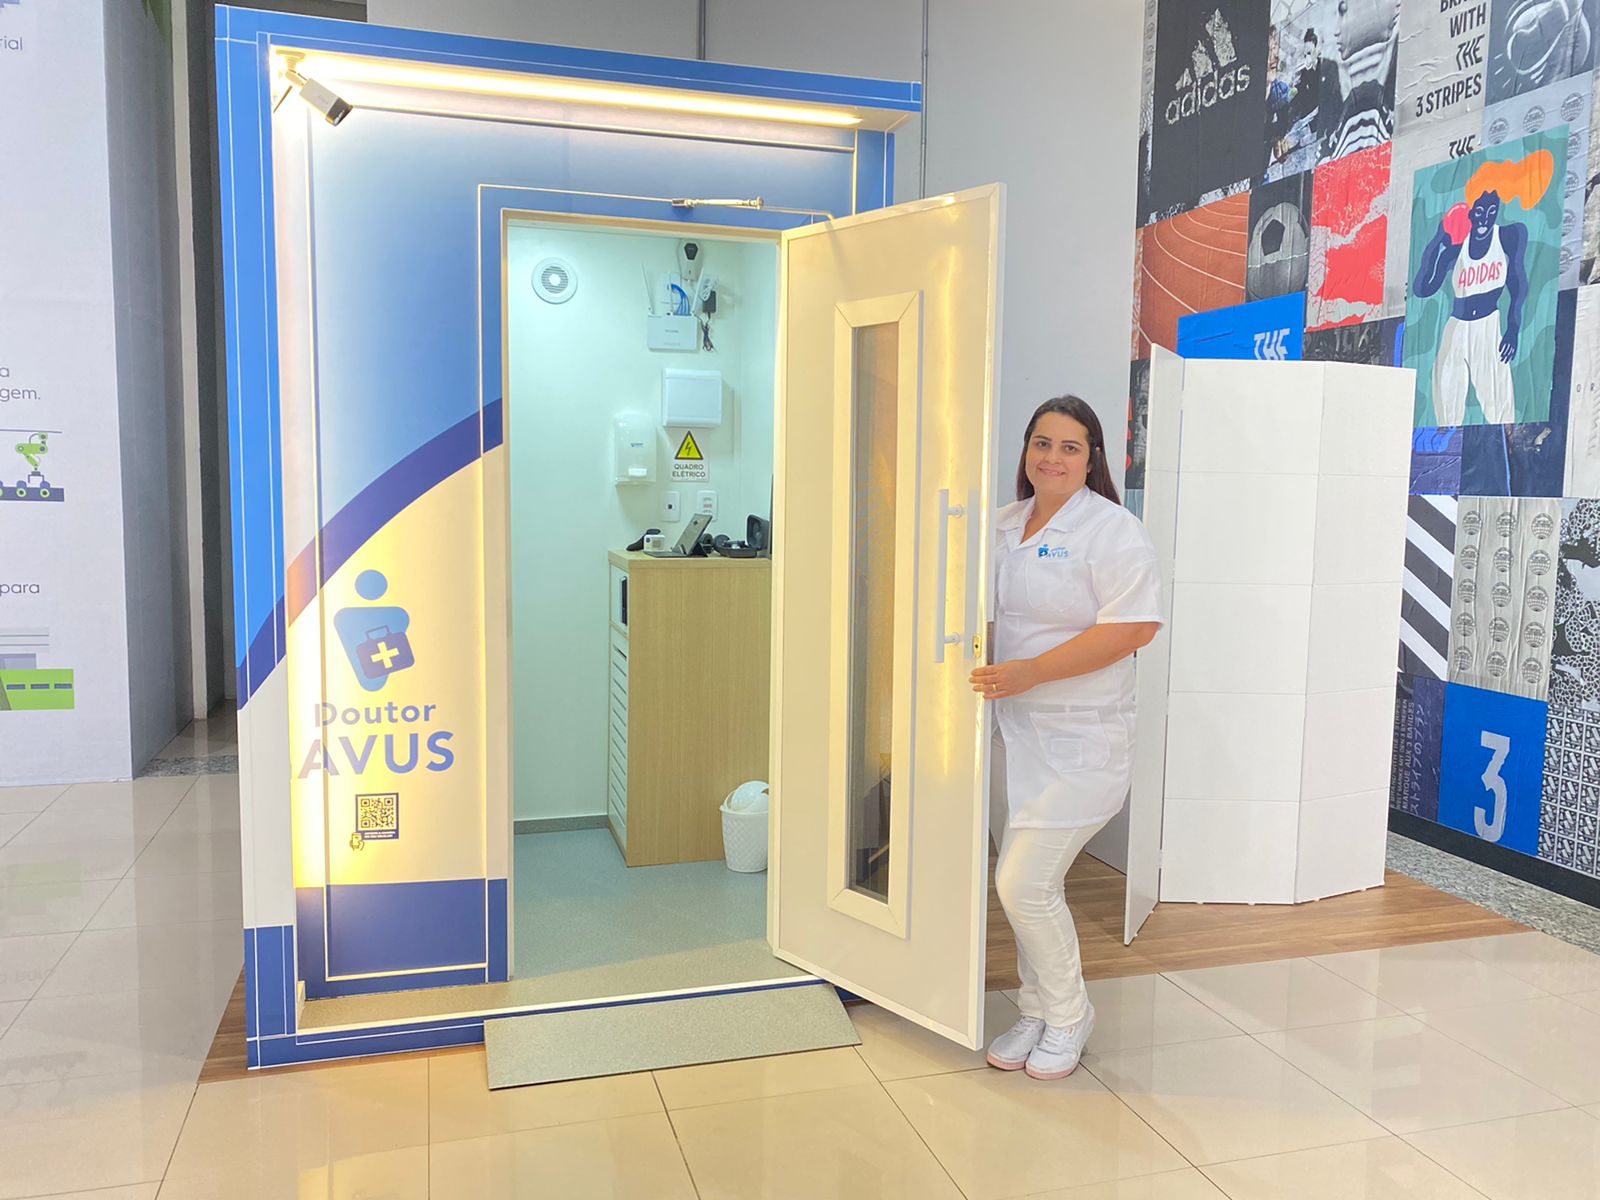 Dr.Avus é pioneira em alocar Cabine de Telemedicina em shopping / Divulgação